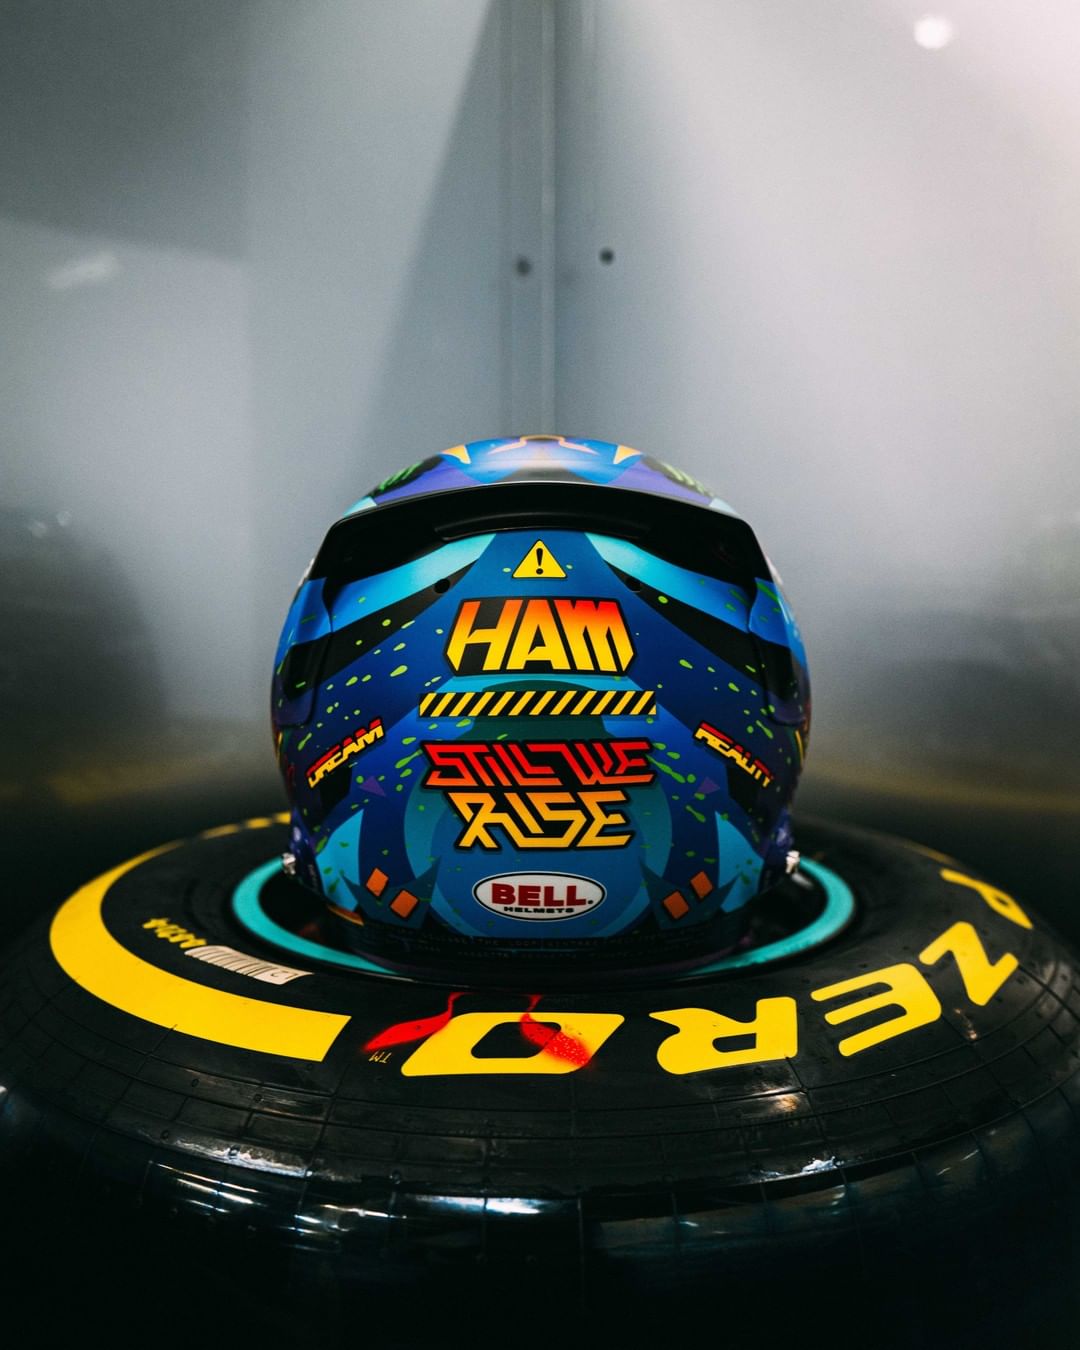 Lewis Hamilton's 2021 British Grand Prix helmet